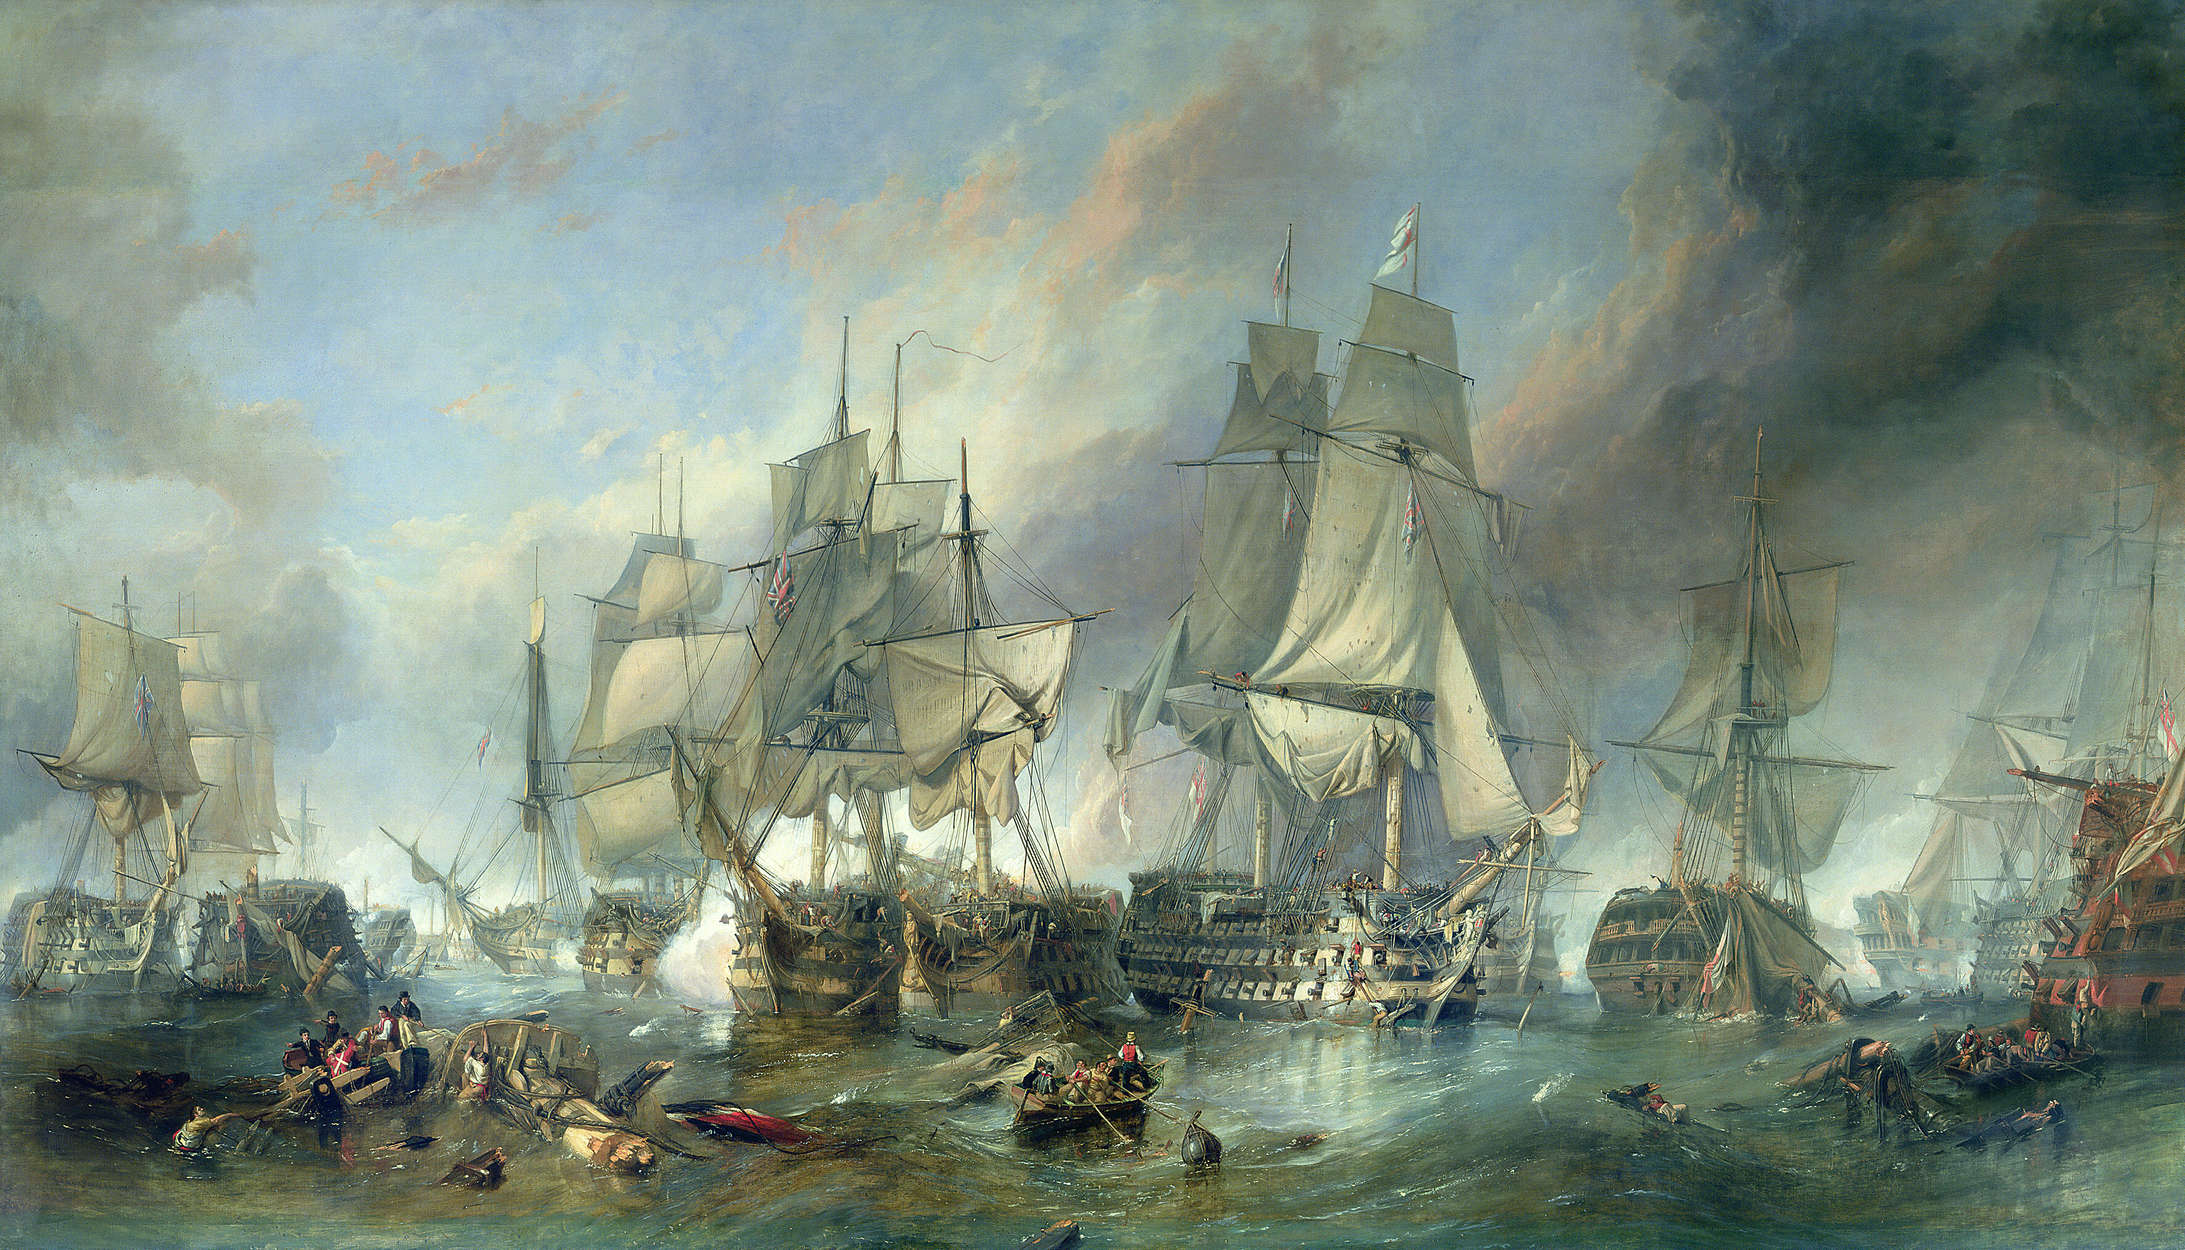             Fototapete "Die Schlacht Trafalgar" von Clarkson Stanfield
        